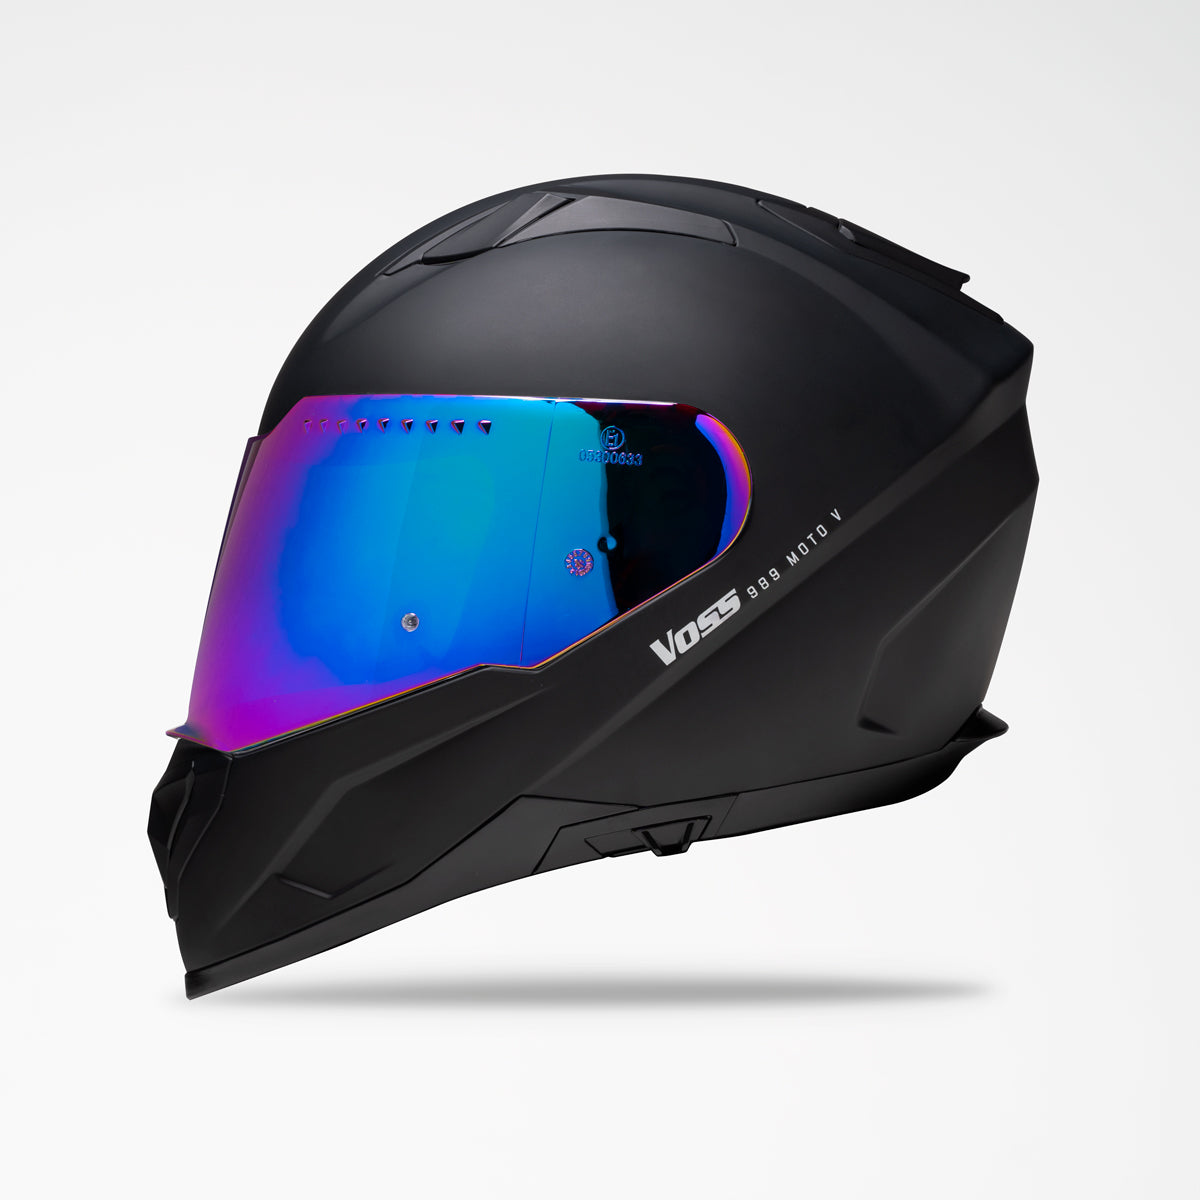 VOSS 989 MOTO-V MATTE BLACK HELMET - Voss Helmets